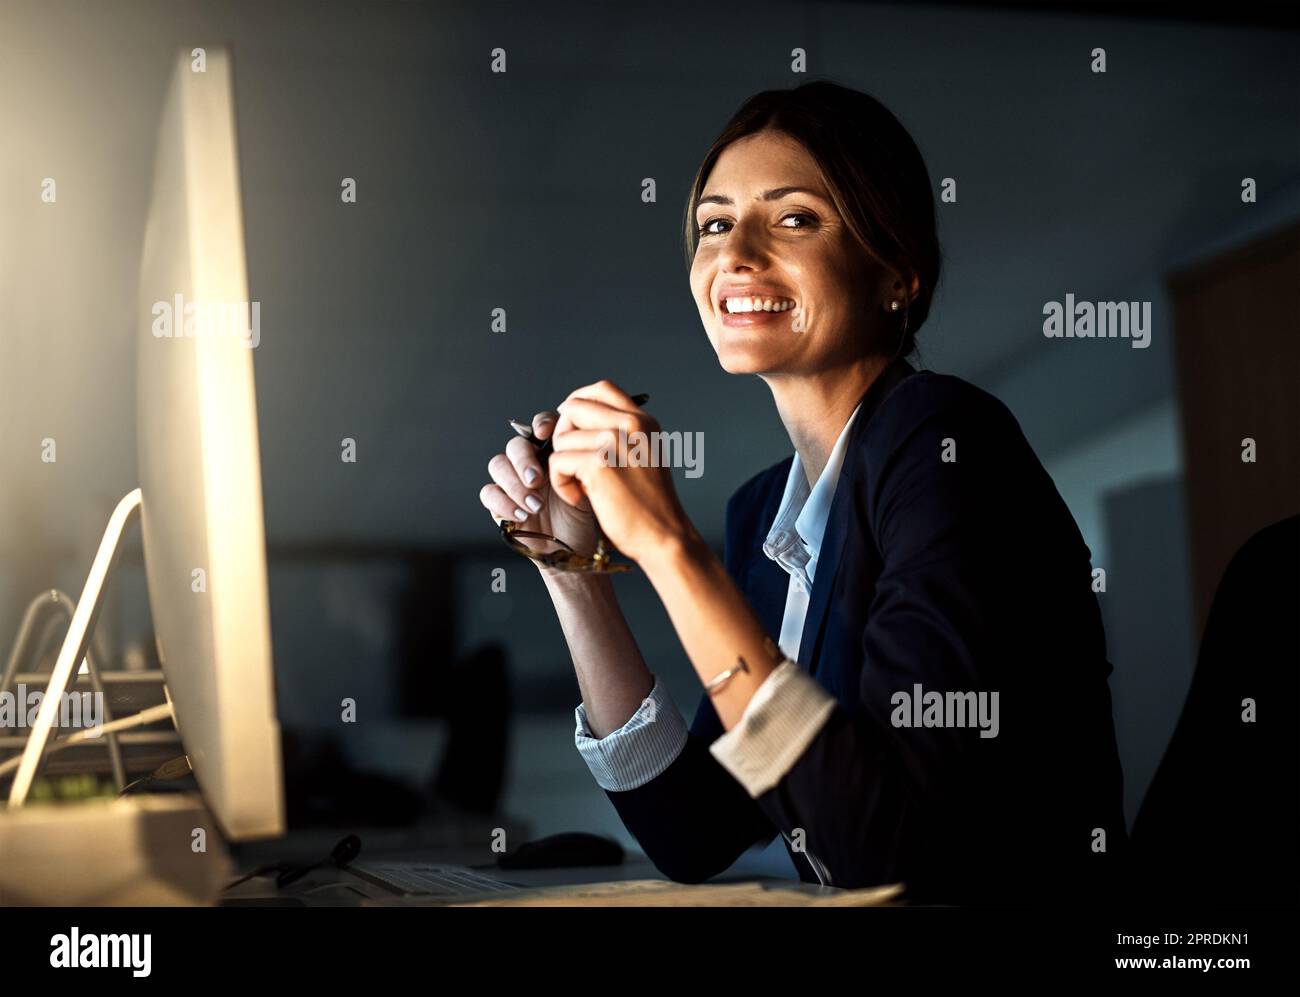 Ich investiere alles in meine Karriere. Porträt einer jungen Geschäftsfrau, die nachts in einem Büro arbeitet. Stockfoto